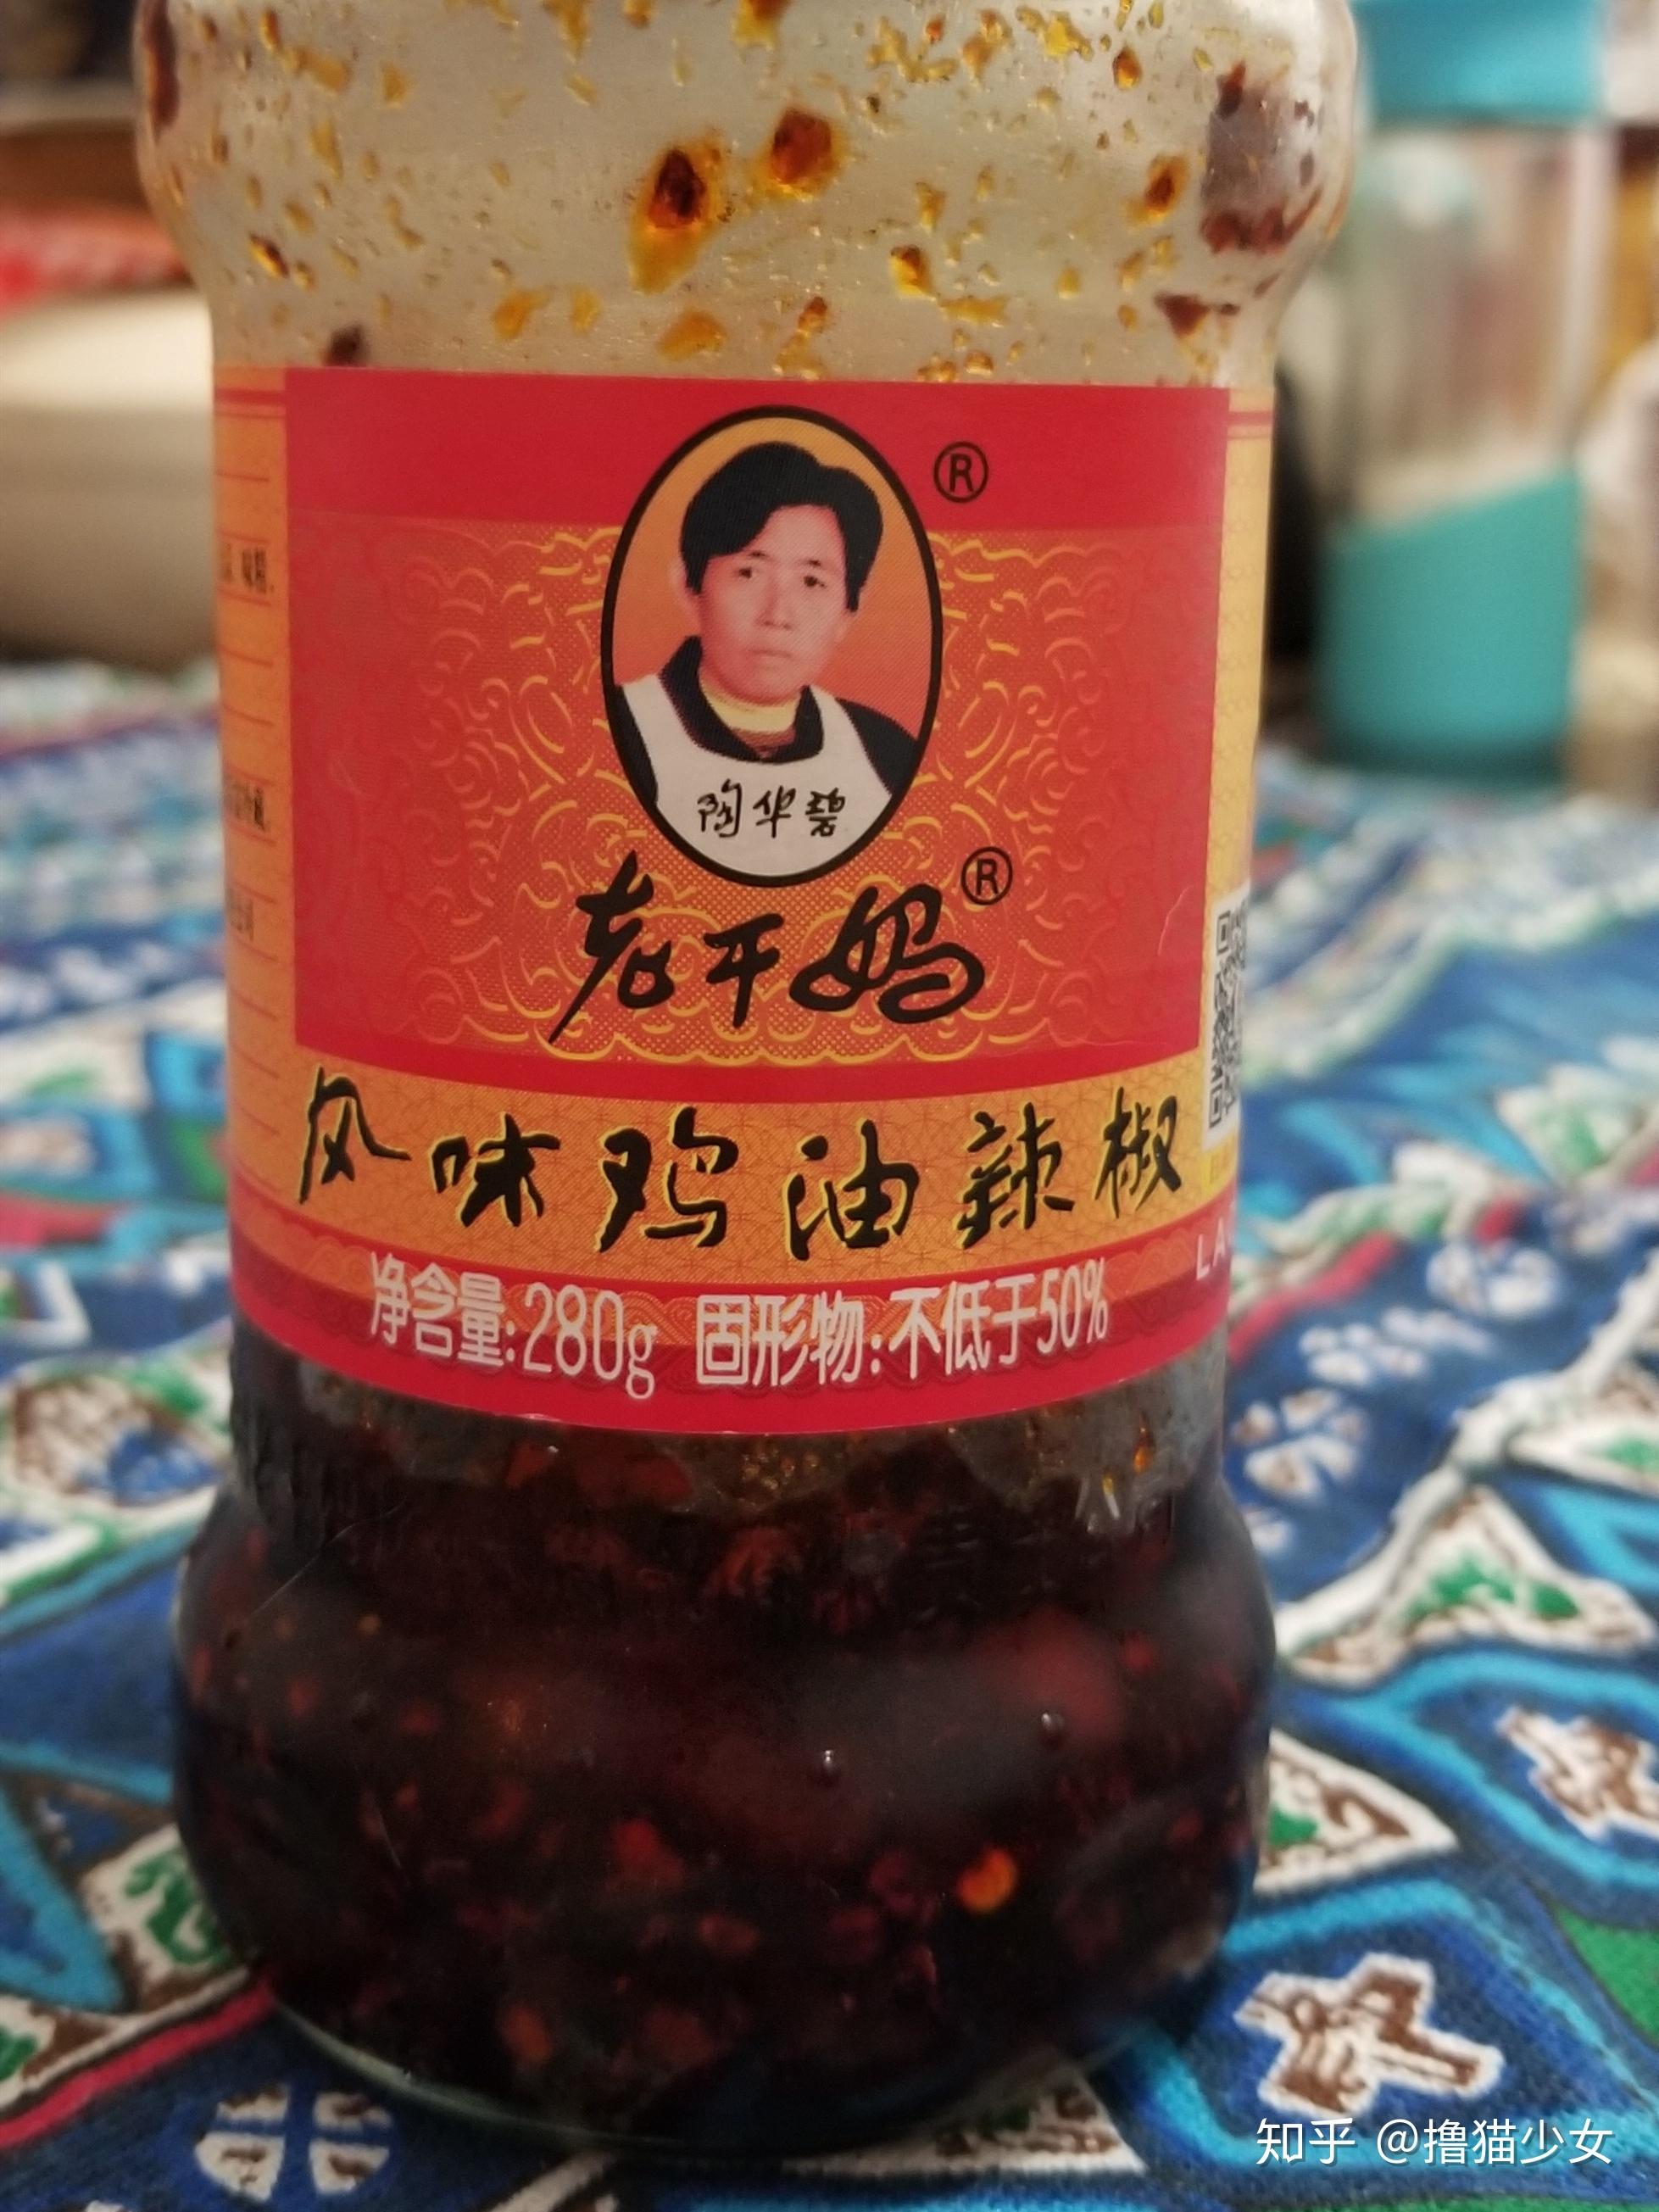 LGM C/Chilli Sauce 280g老干妈风味鸡油辣椒酱 – Hong Kong Supermarket